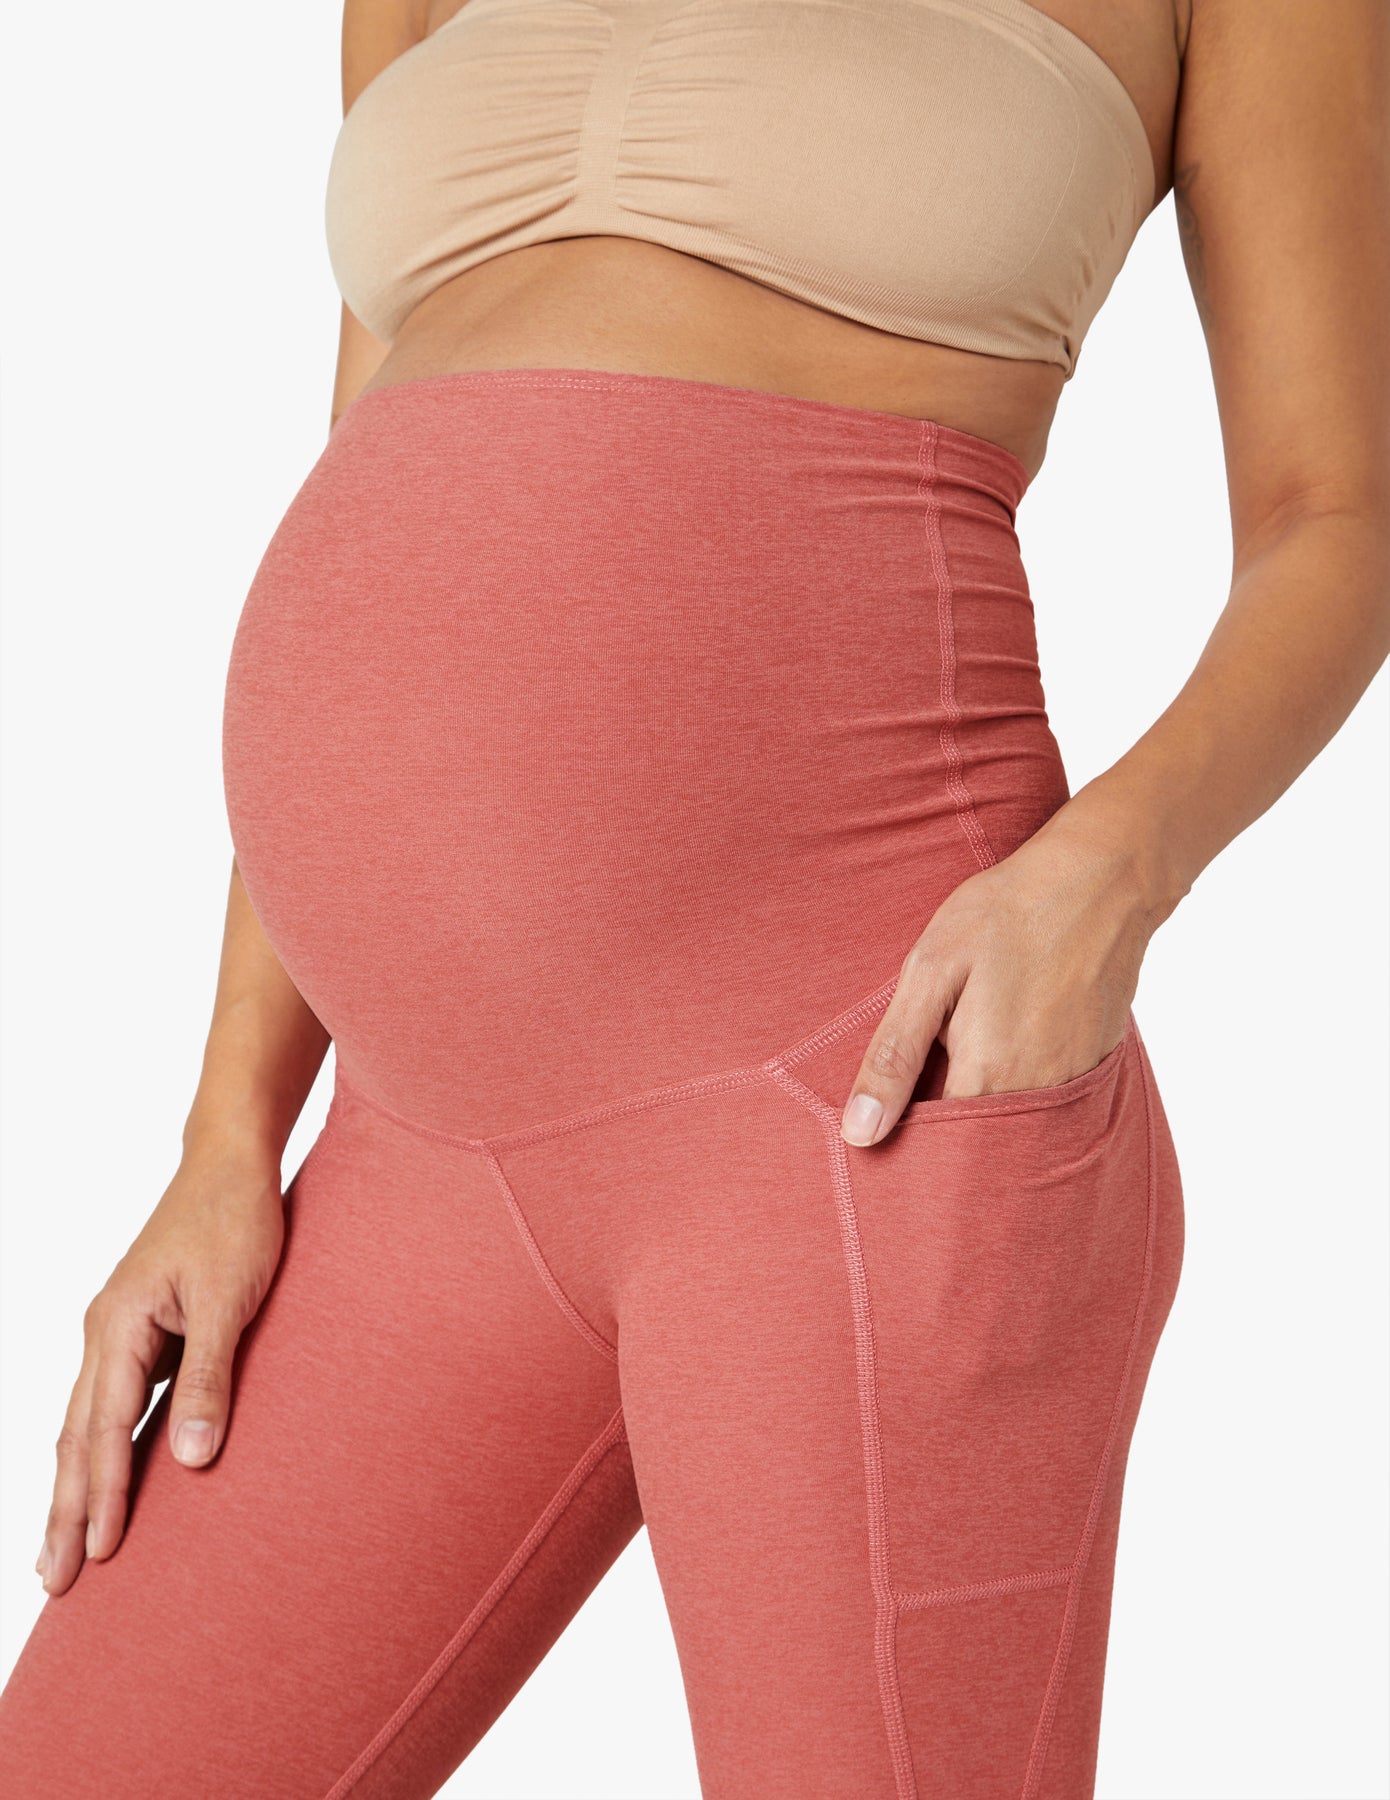 AFITNE Maternity Leggings Over The Belly for Women Pregnancy Yoga